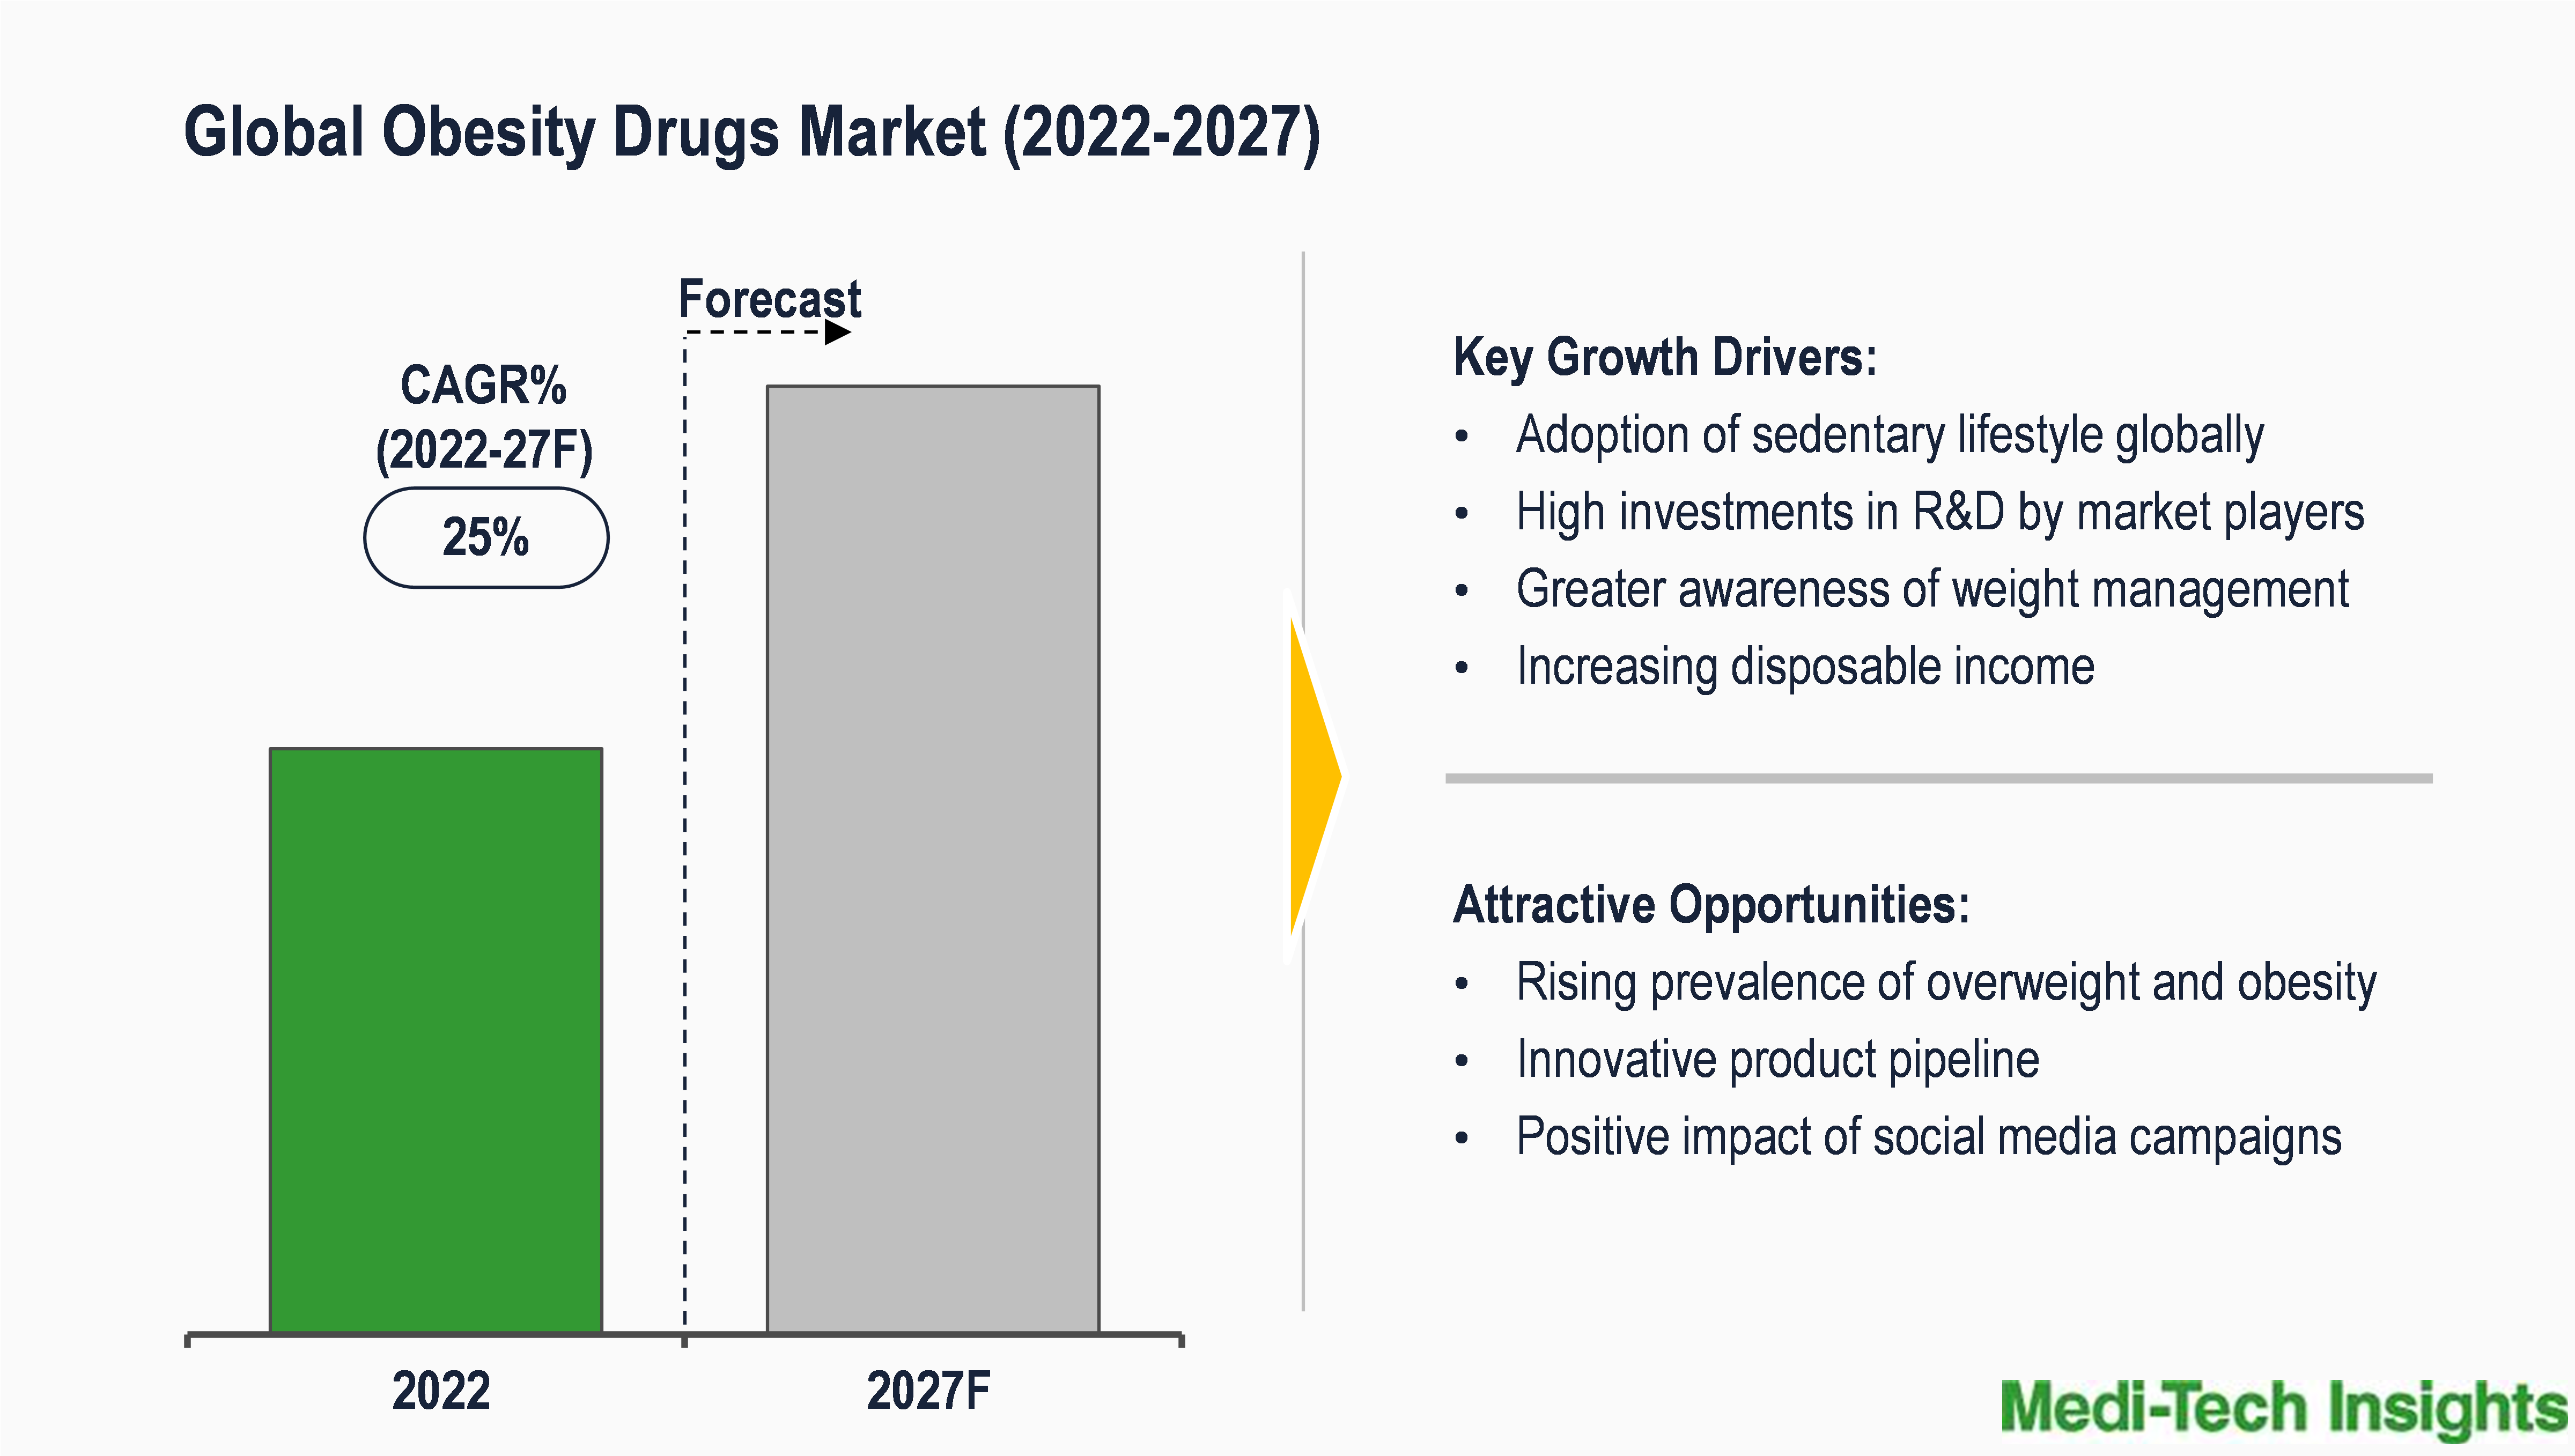 Global Obesity Drugs Market valued at 2.3 billion (2022),